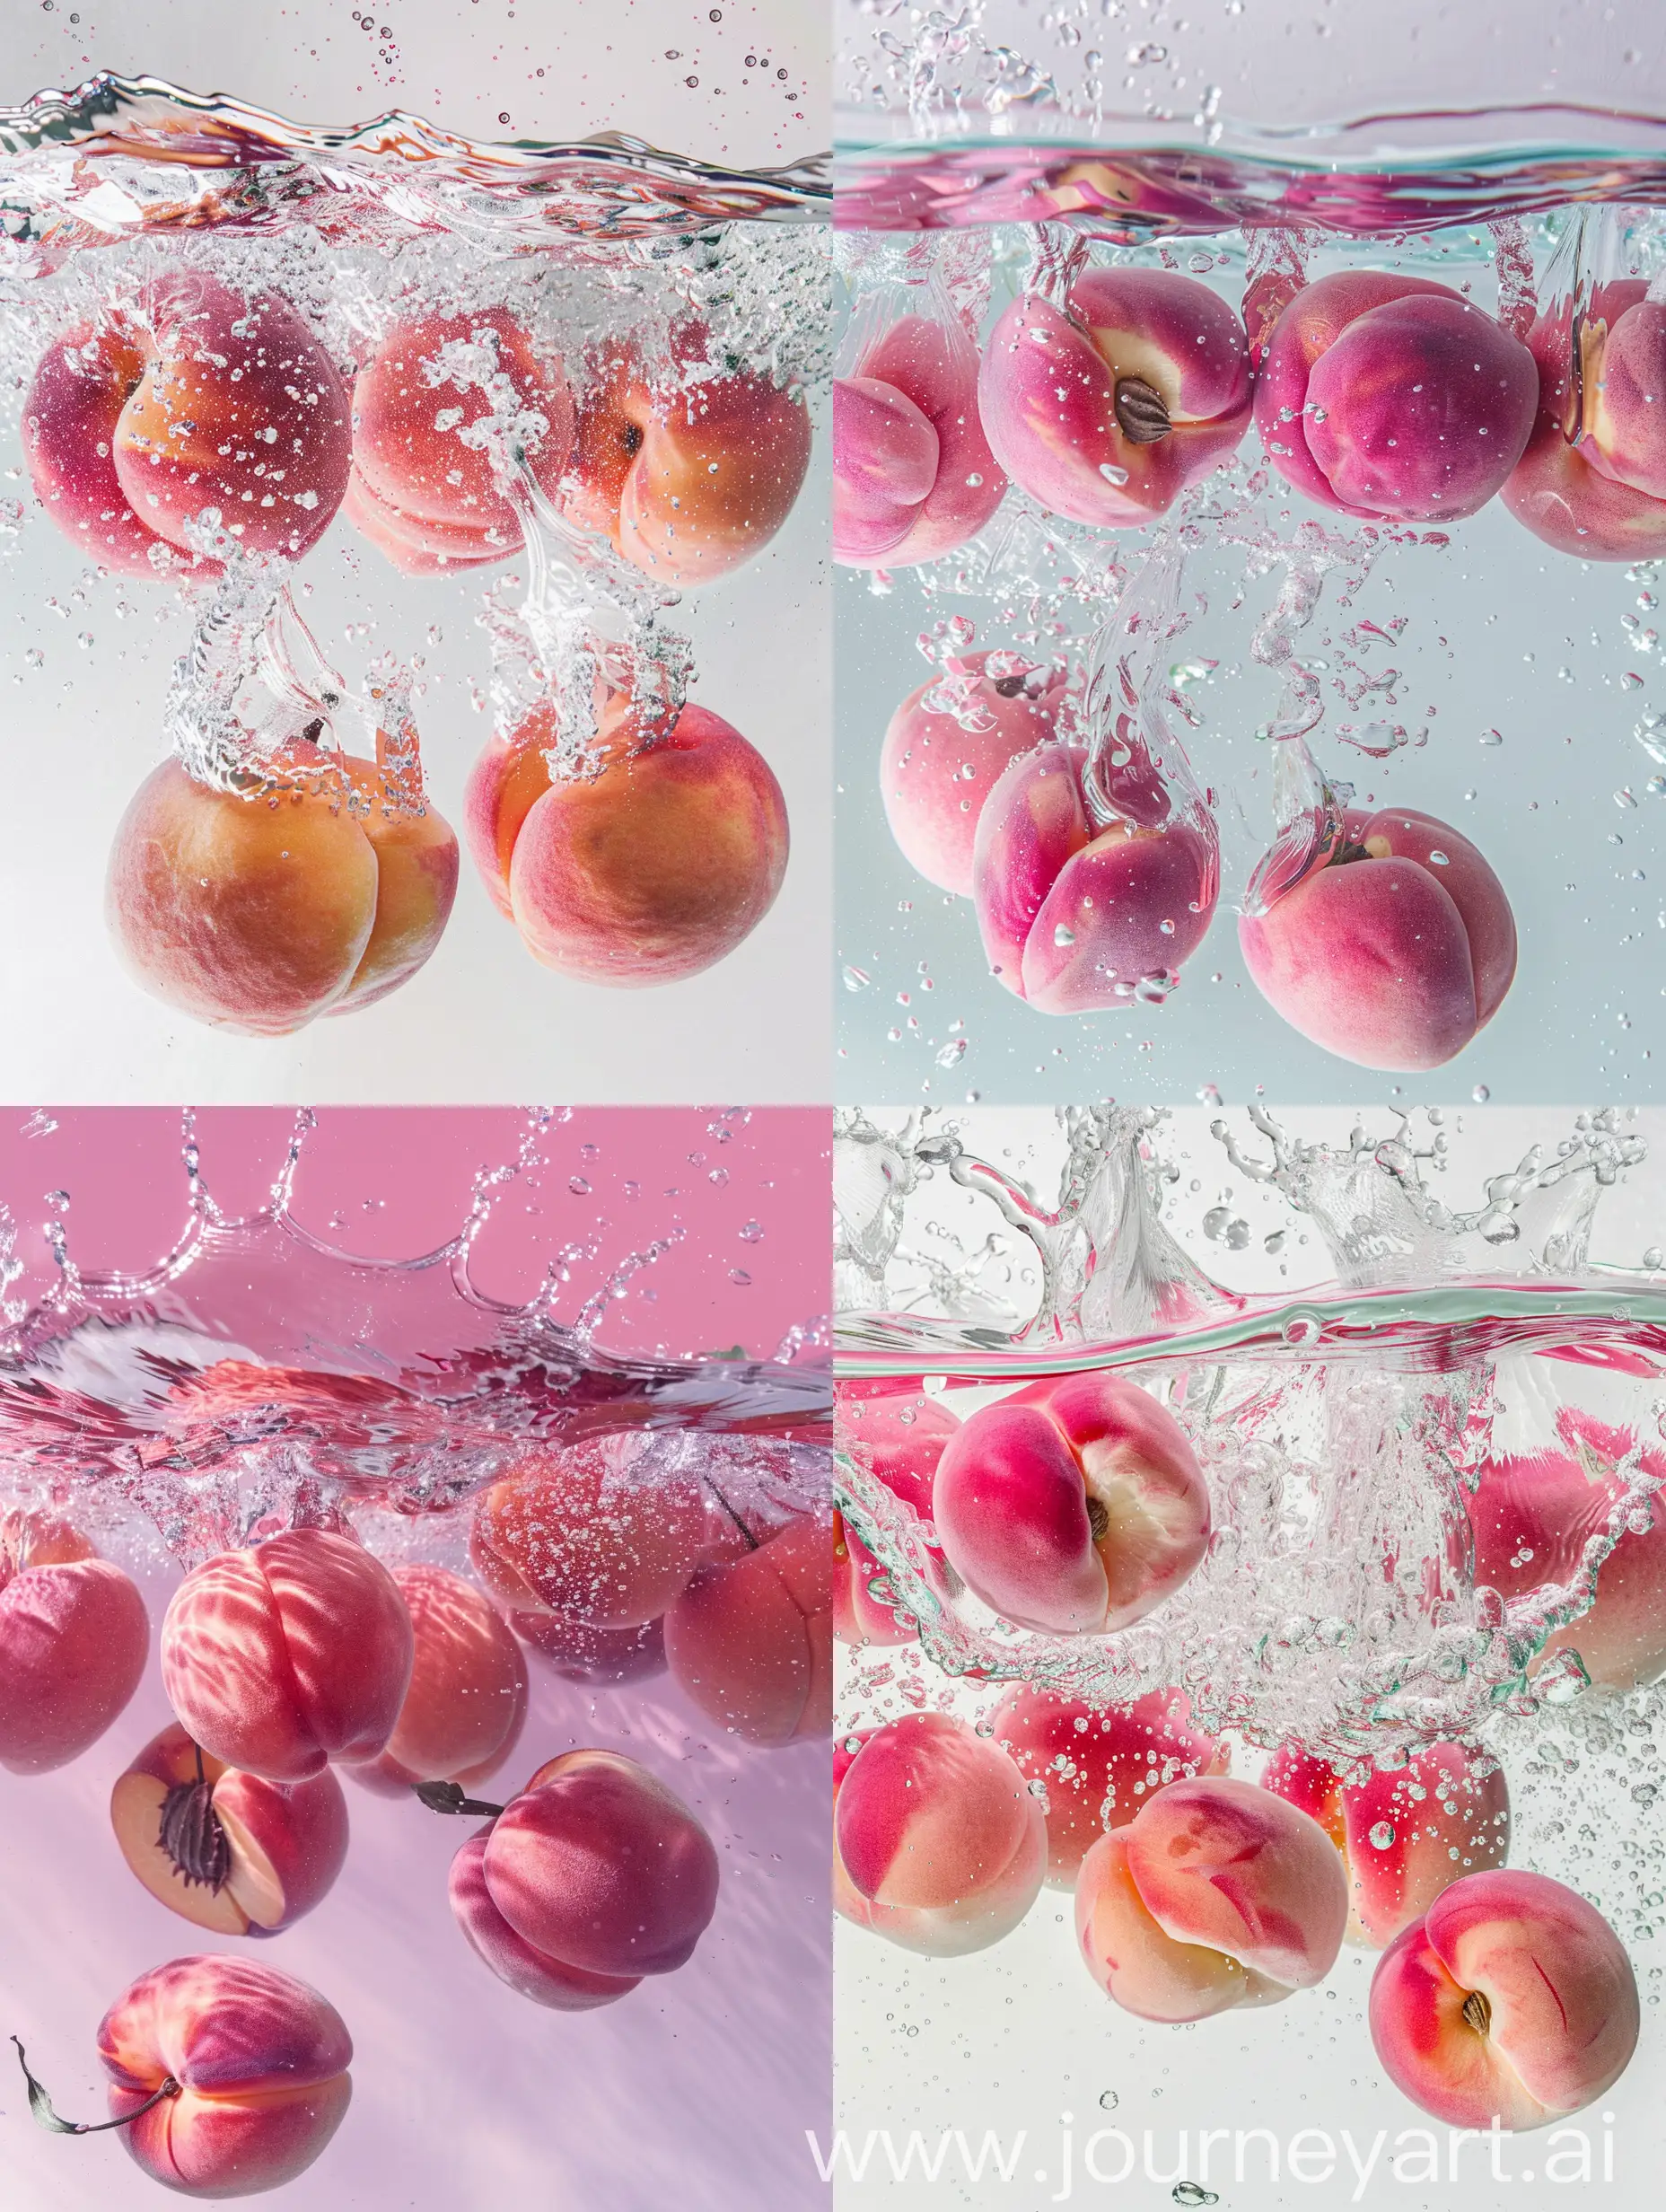 粉色的水蜜桃掉在清澈干净的水里激起水花，浅粉色